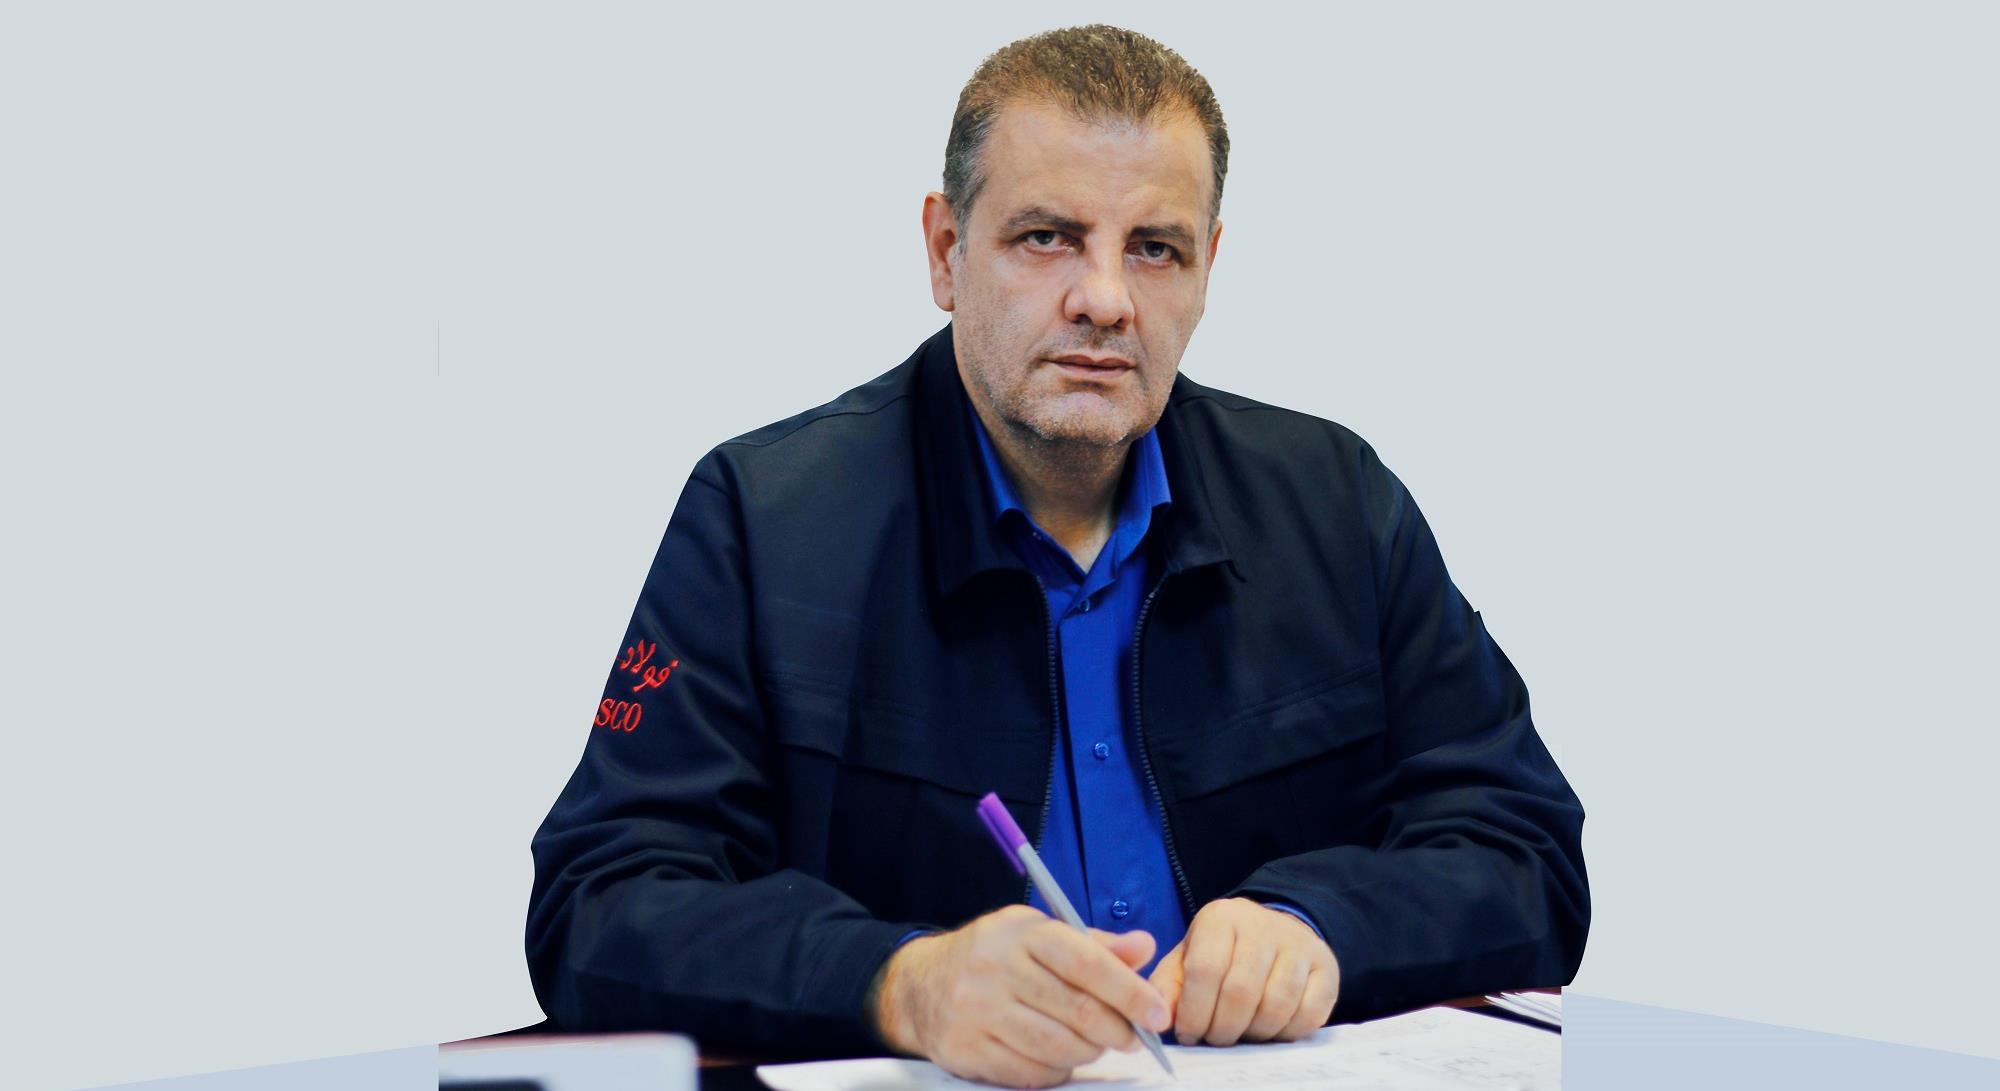 عطارد گودرزی، مدیرعامل شرکت احیا استیل فولاد بافت